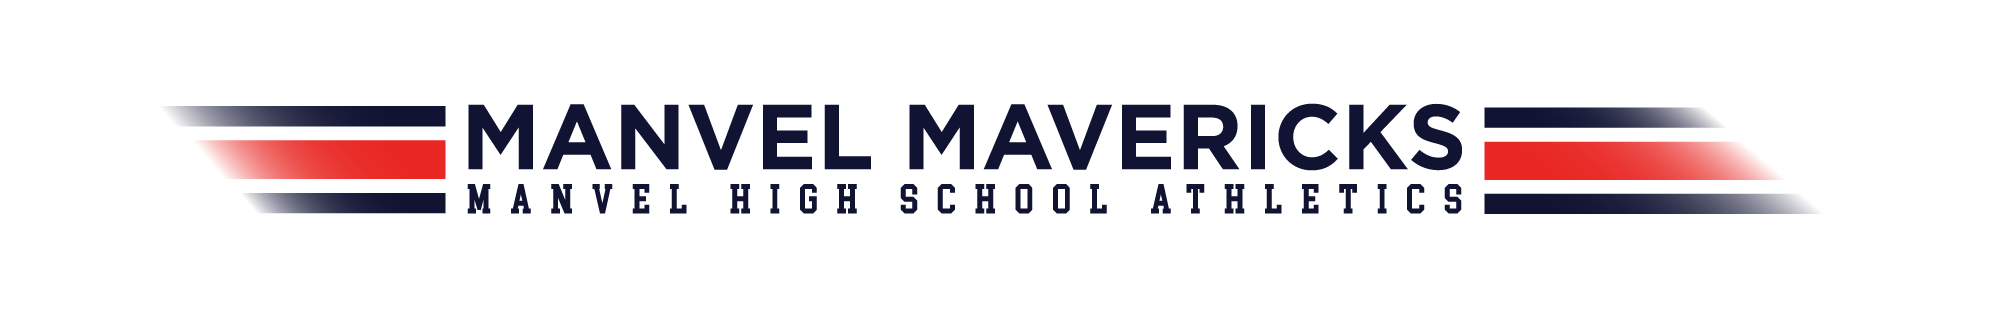 Manvel HS Banner Image